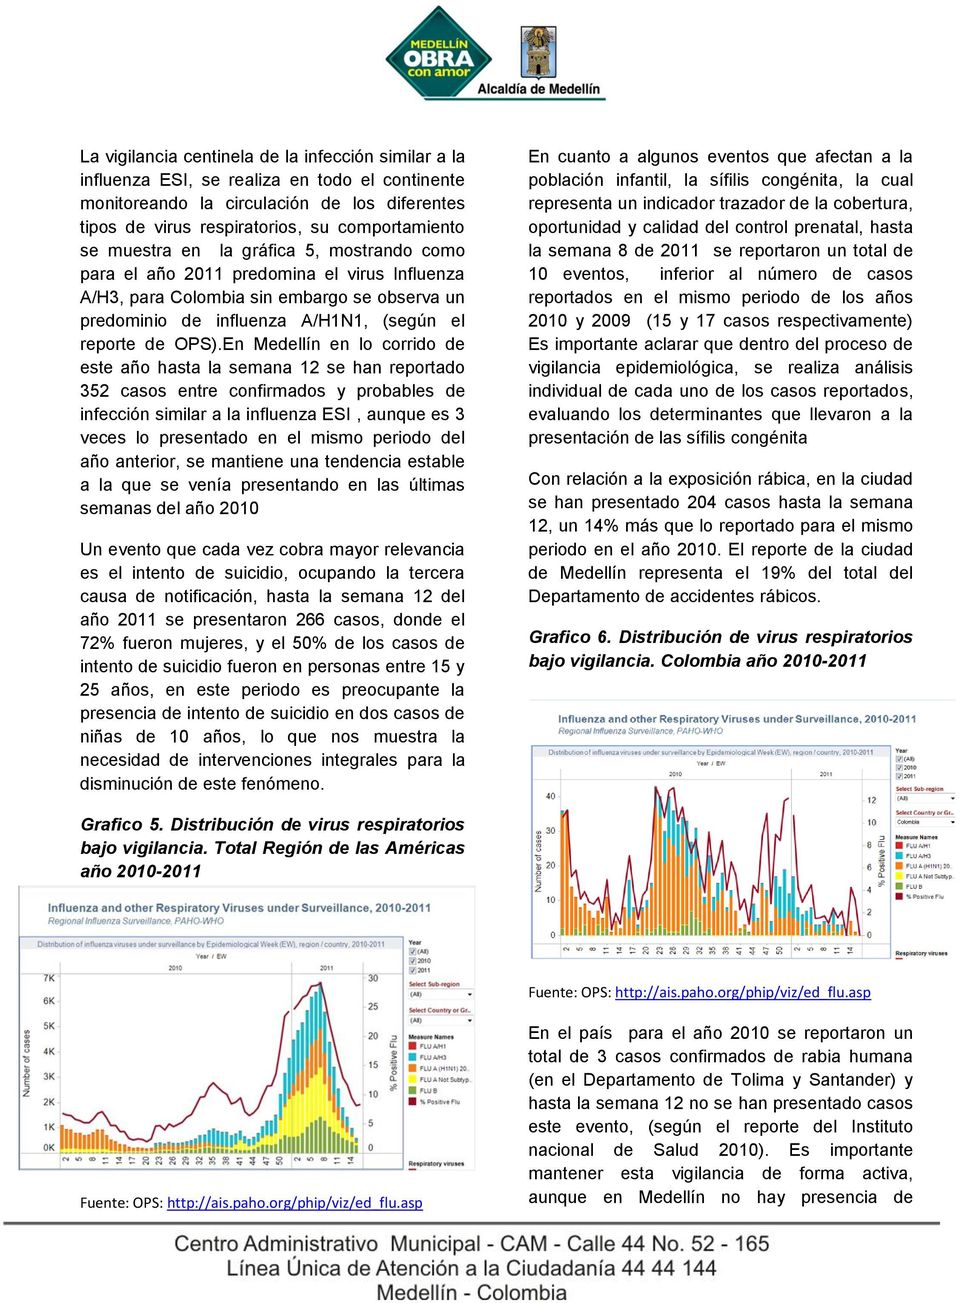 En Medellín en lo corrido de este año hasta la semana 12 se han reportado 352 casos entre confirmados y probables de infección similar a la influenza ESI, aunque es 3 veces lo presentado en el mismo